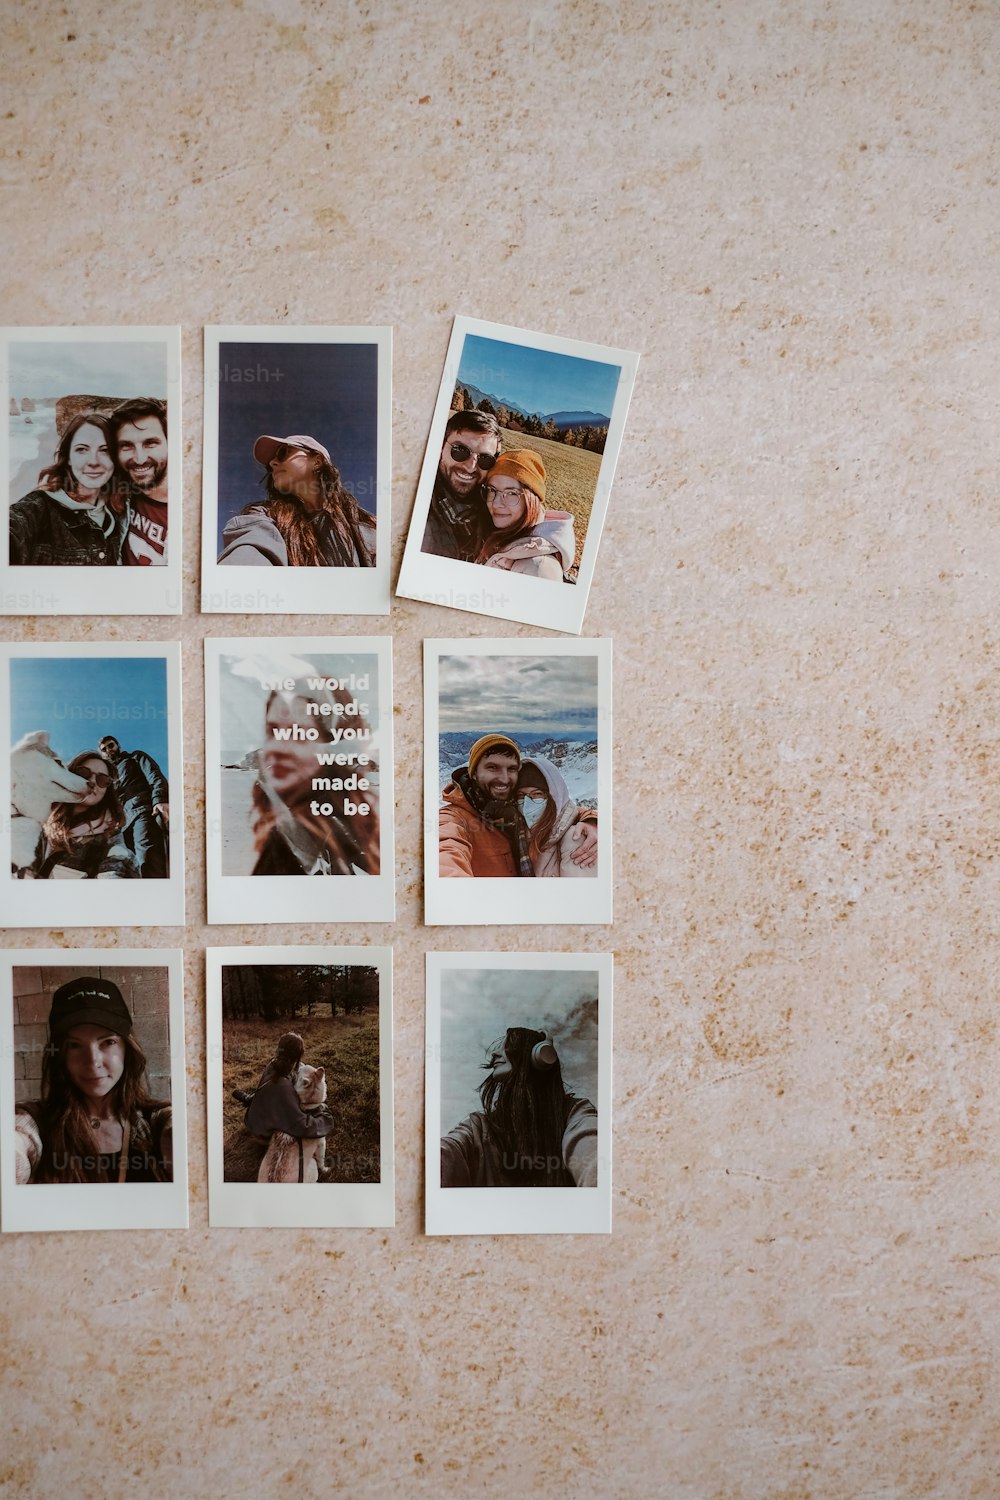 Un gruppo di immagini polaroid di un uomo e una donna